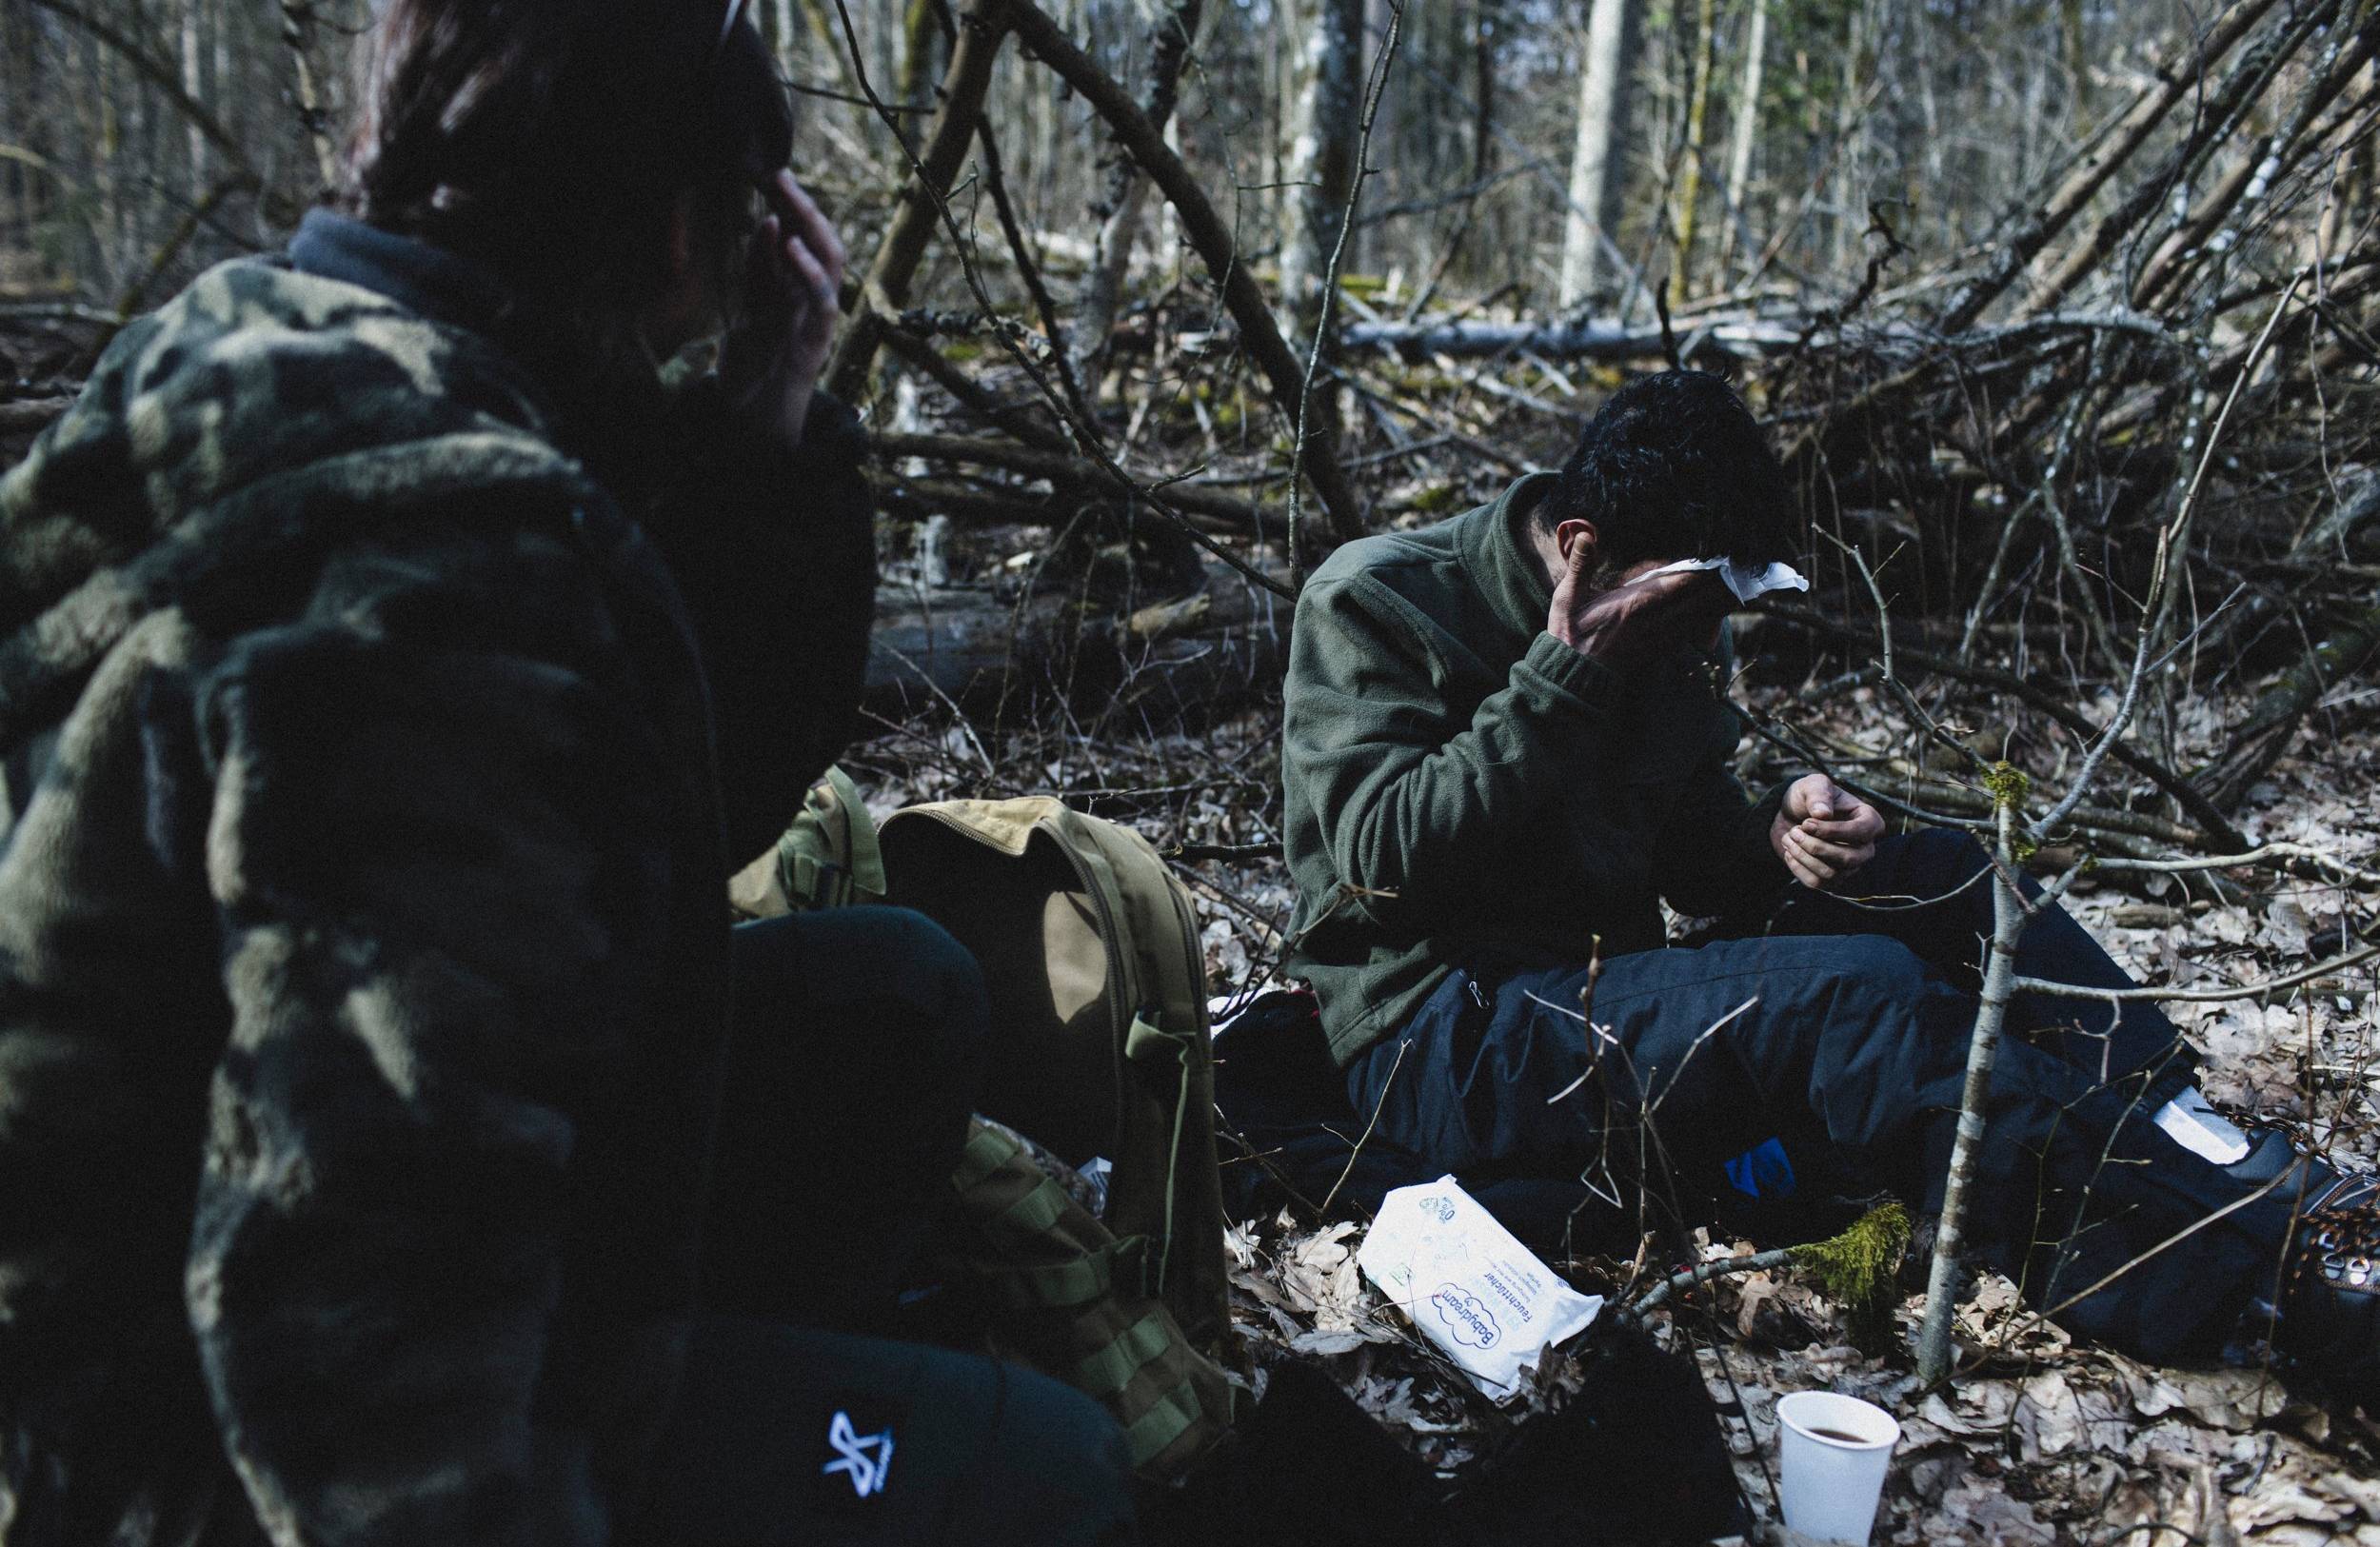 Dwaj uchodżcy siedzą w lesie, jeden z nich wyciera chusteczką higieniczną twarz, drugi okrywa się kocem. Granica